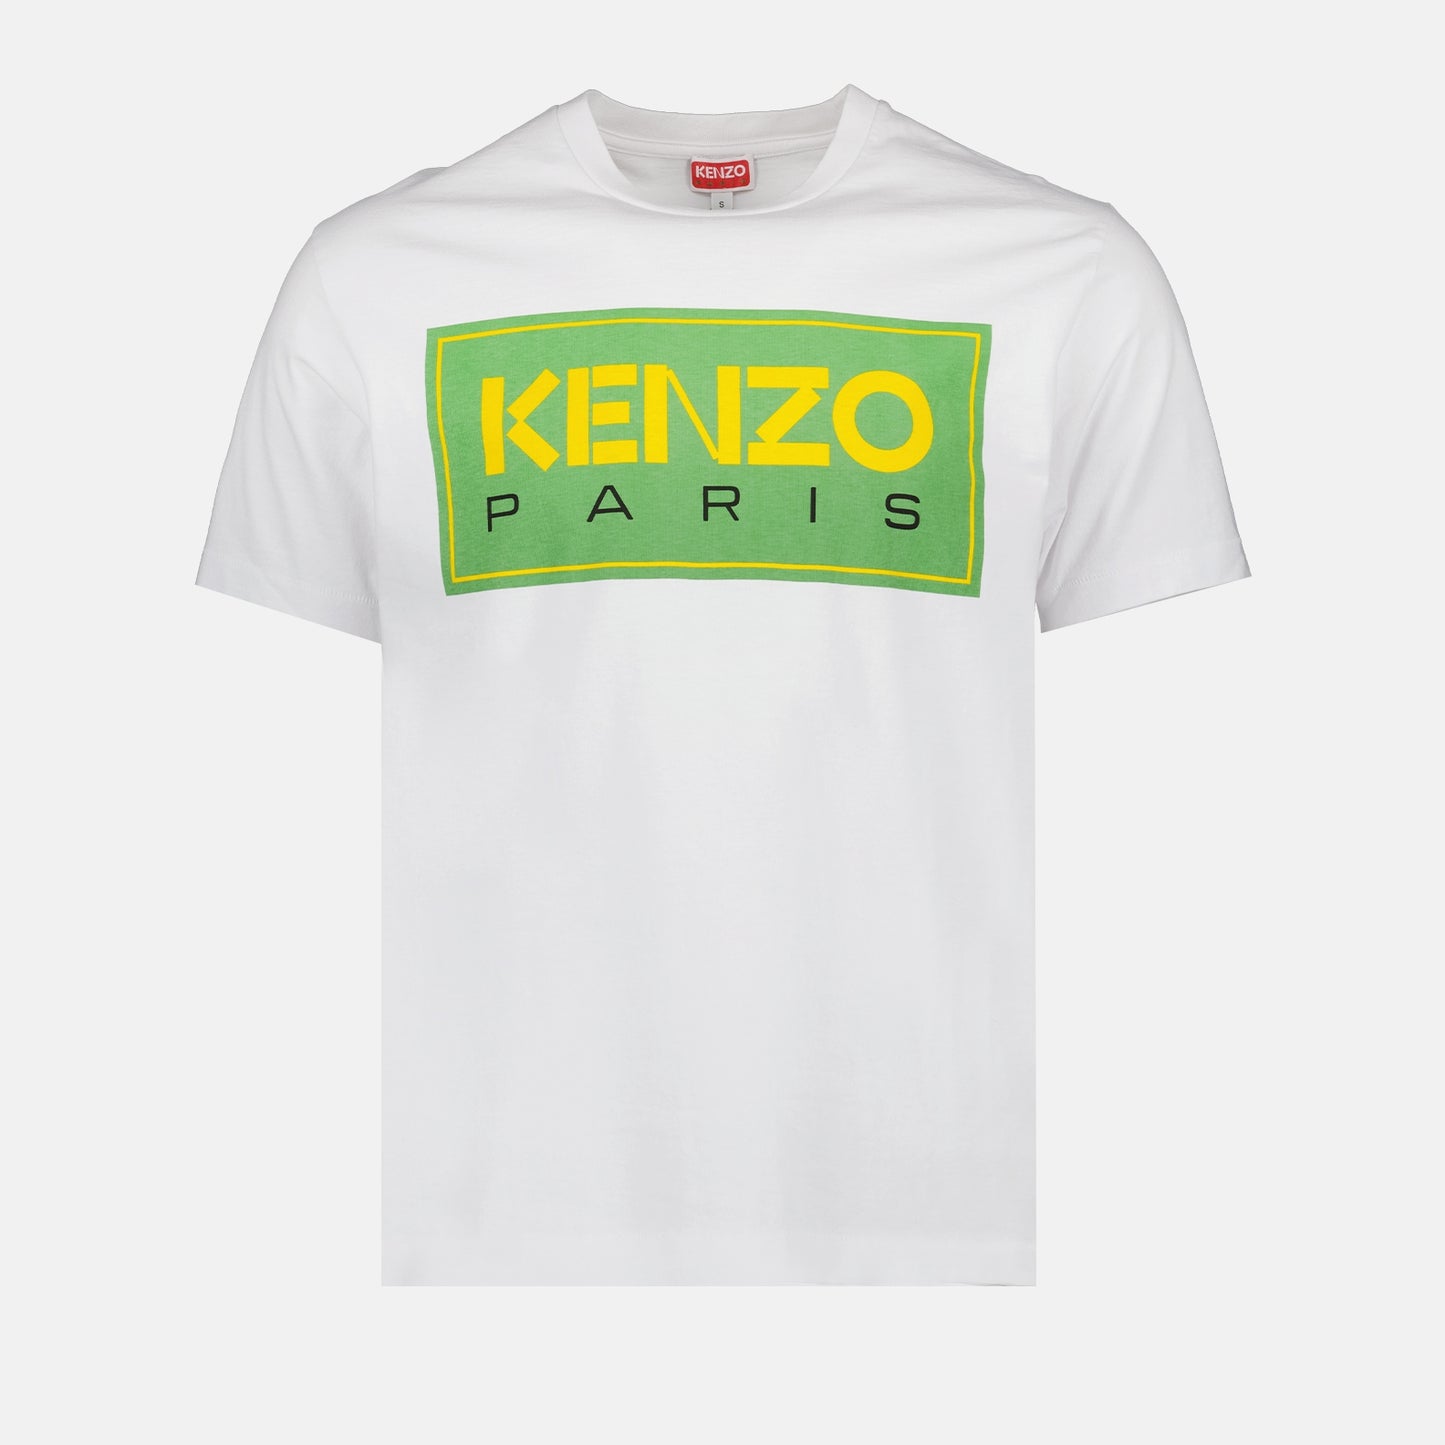 T-shirt Kenzo Paris Kenzo pour Homme | myCompañero.com